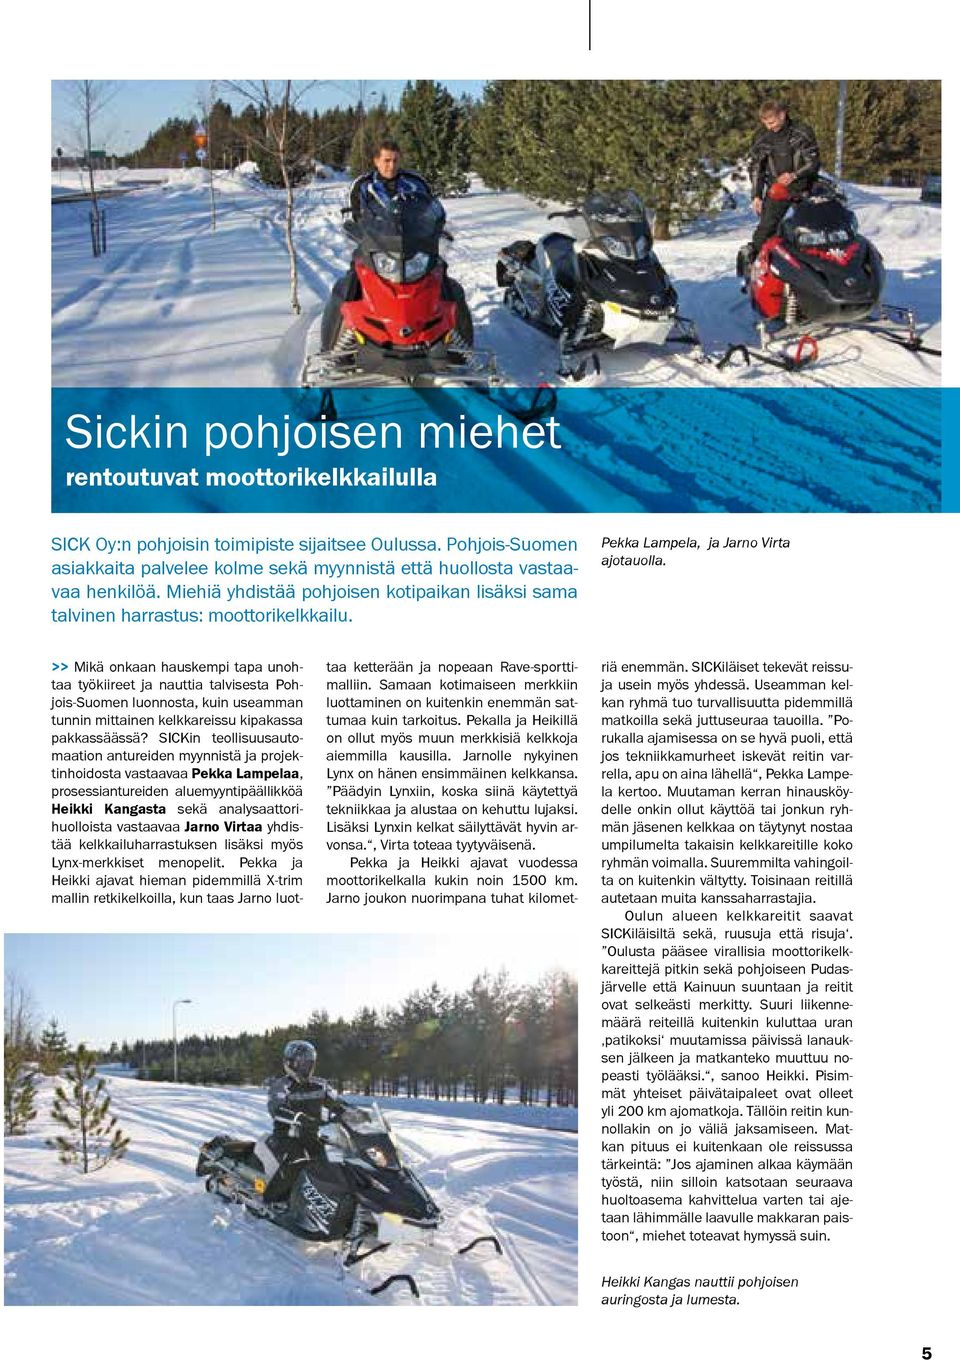 >> Mikä onkaan hauskempi tapa unohtaa työkiireet ja nauttia talvisesta Pohjois-Suomen luonnosta, kuin useamman tunnin mittainen kelkkareissu kipakassa pakkassäässä?